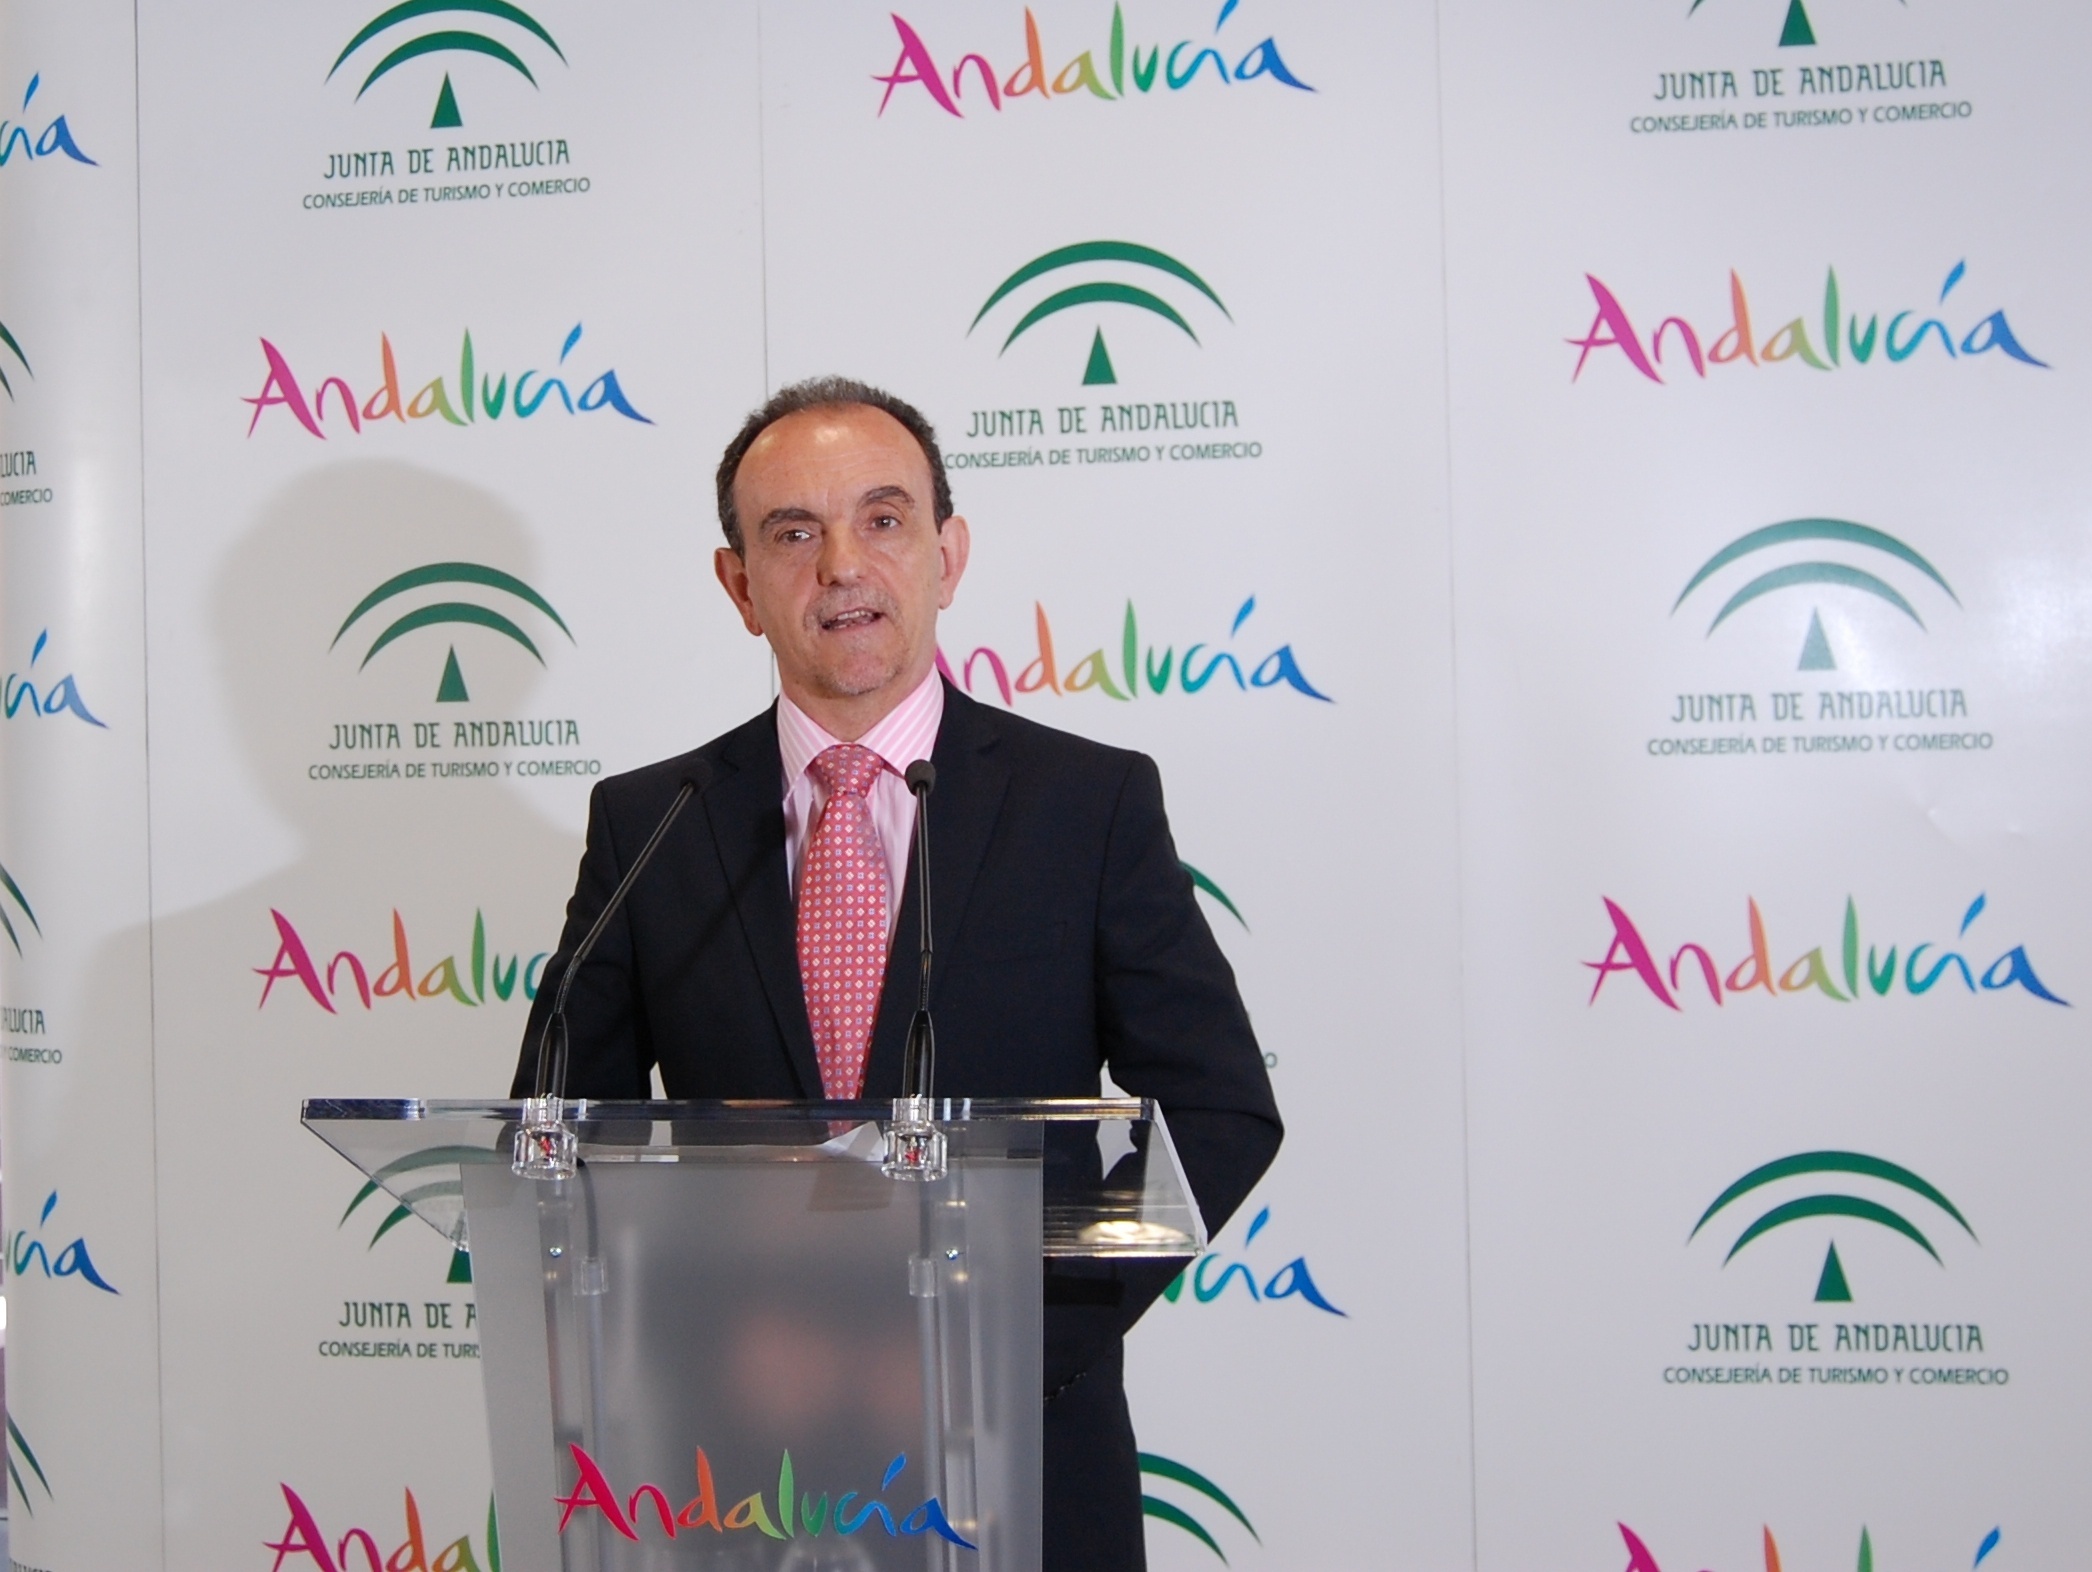 Andalucía registra 6,2 millones de pernoctaciones en establecimientos hoteleros en agosto, un 4,3% más que 2012